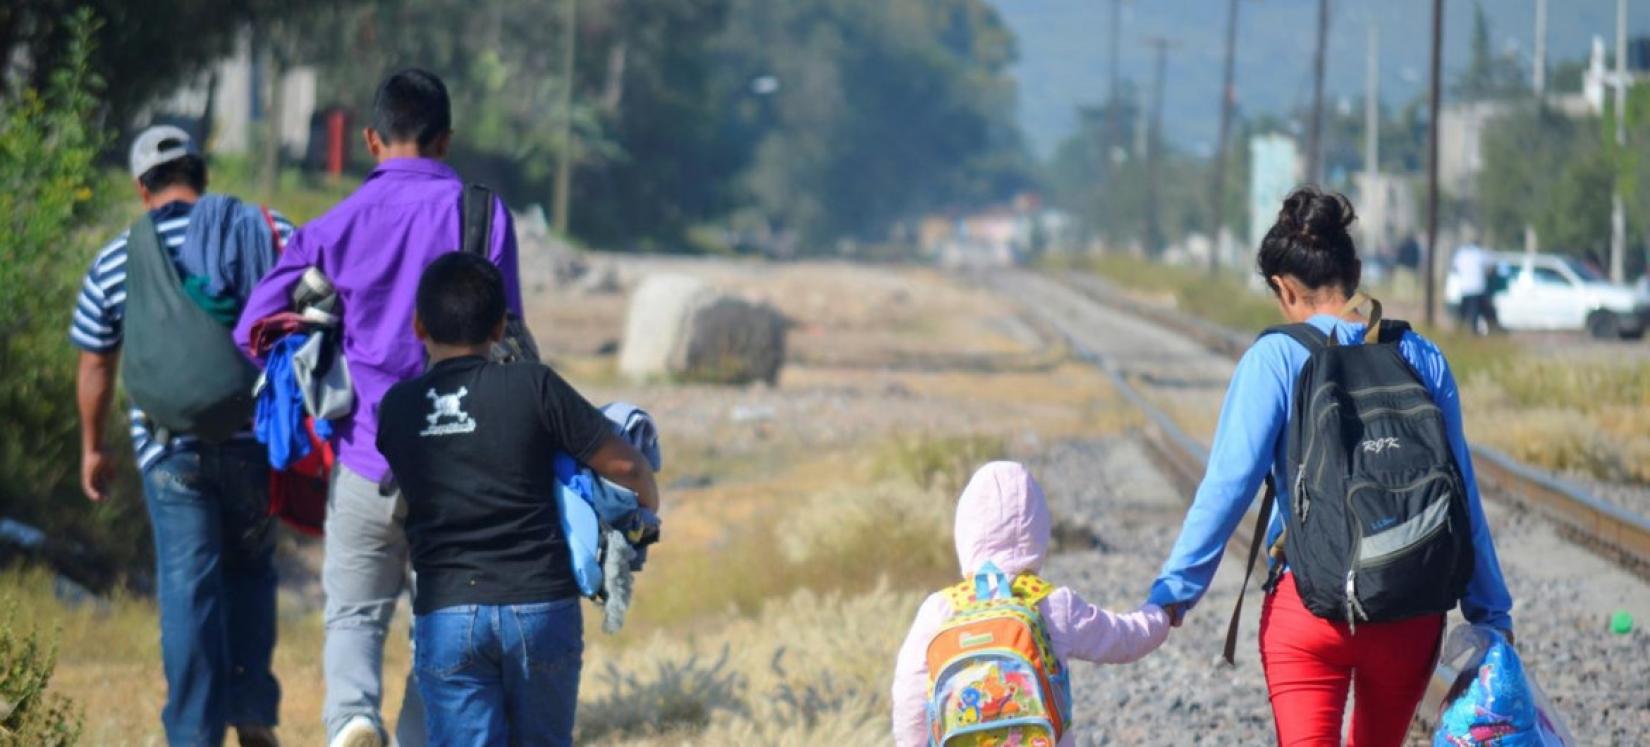 Família migrante no México. Cerca de 11 milhões de mexicanos vivem fora do país.